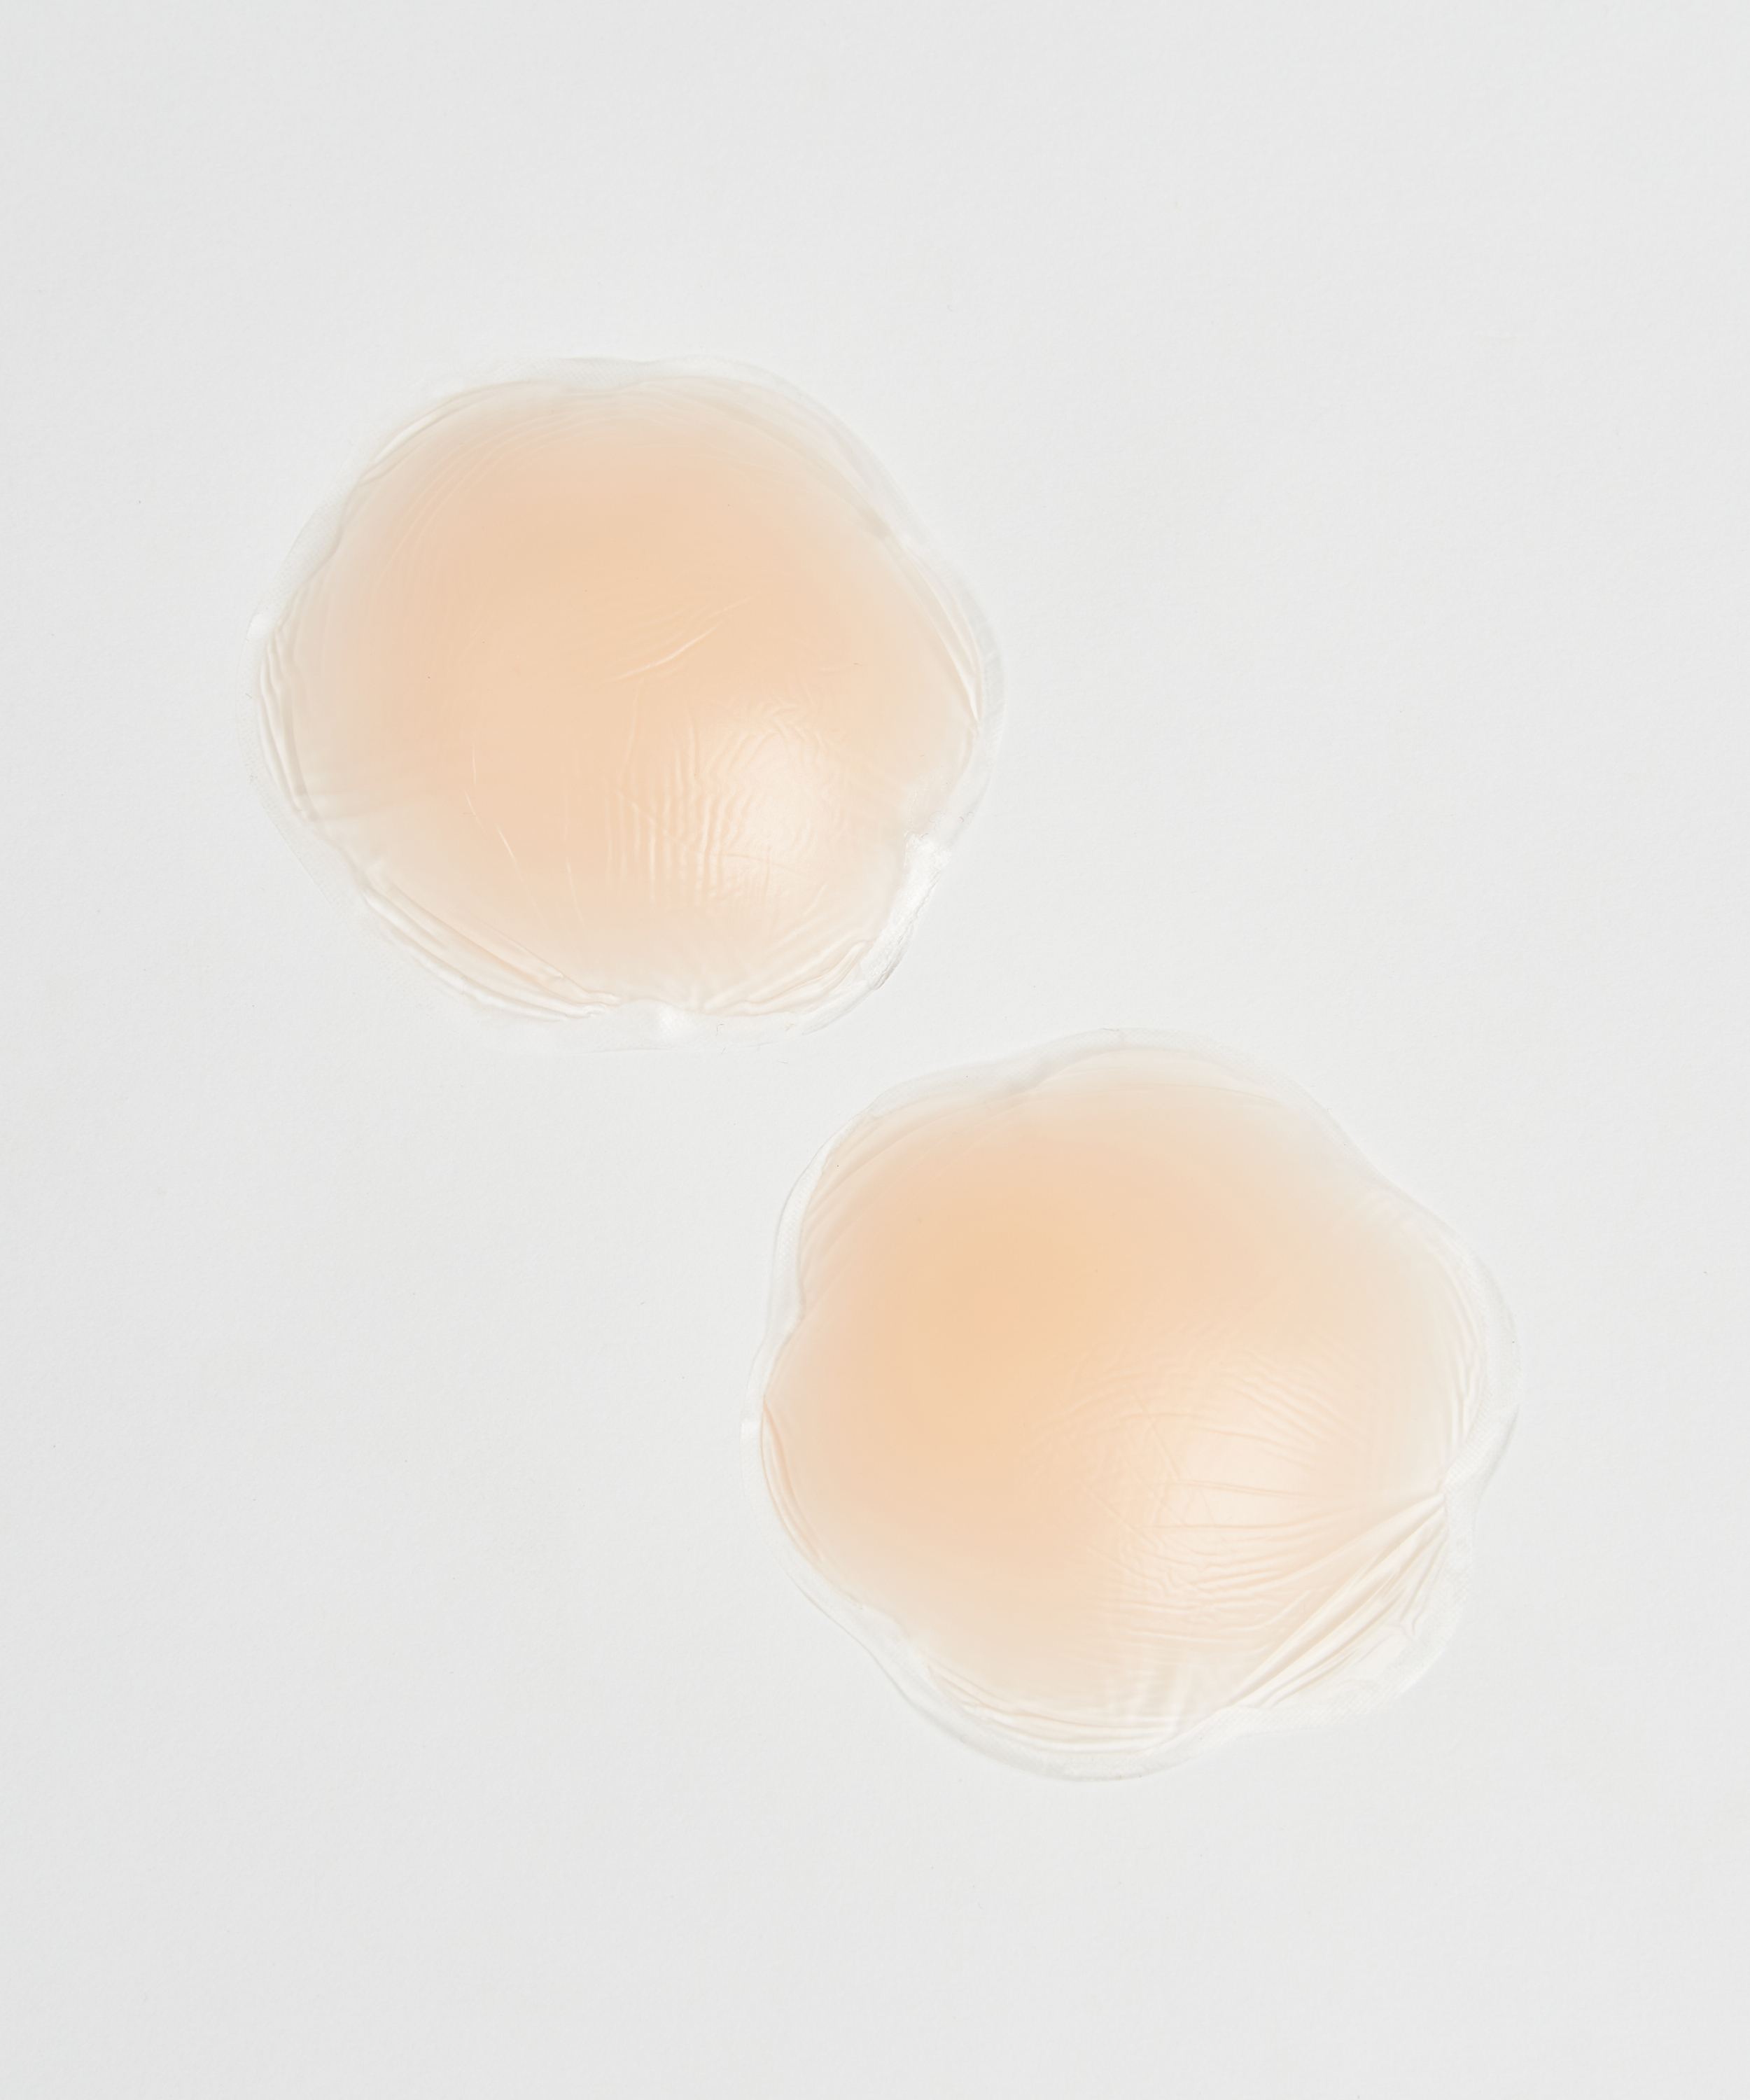 Brystvorteskjulere af silikone, hvid, main